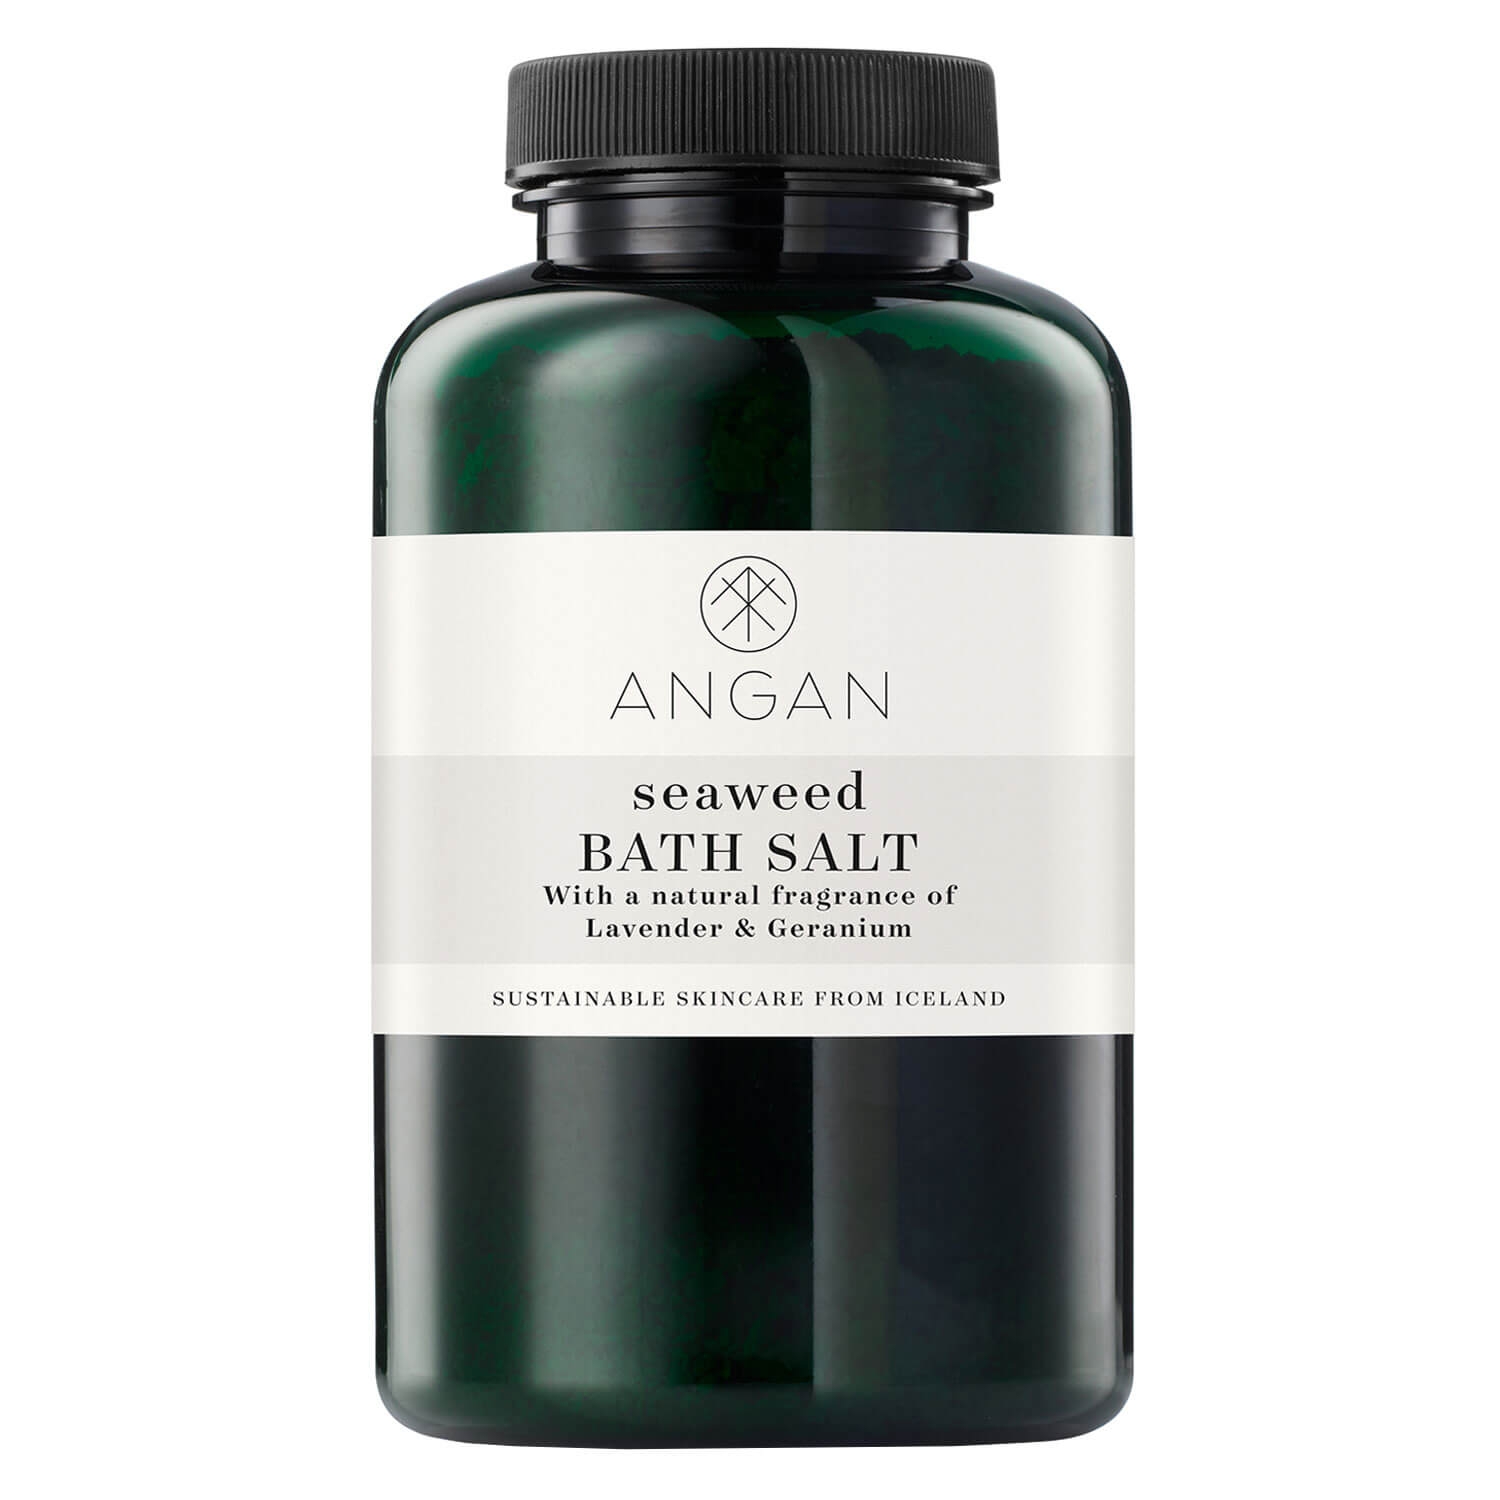 Produktbild von ANGAN - Seaweed Bath Salt